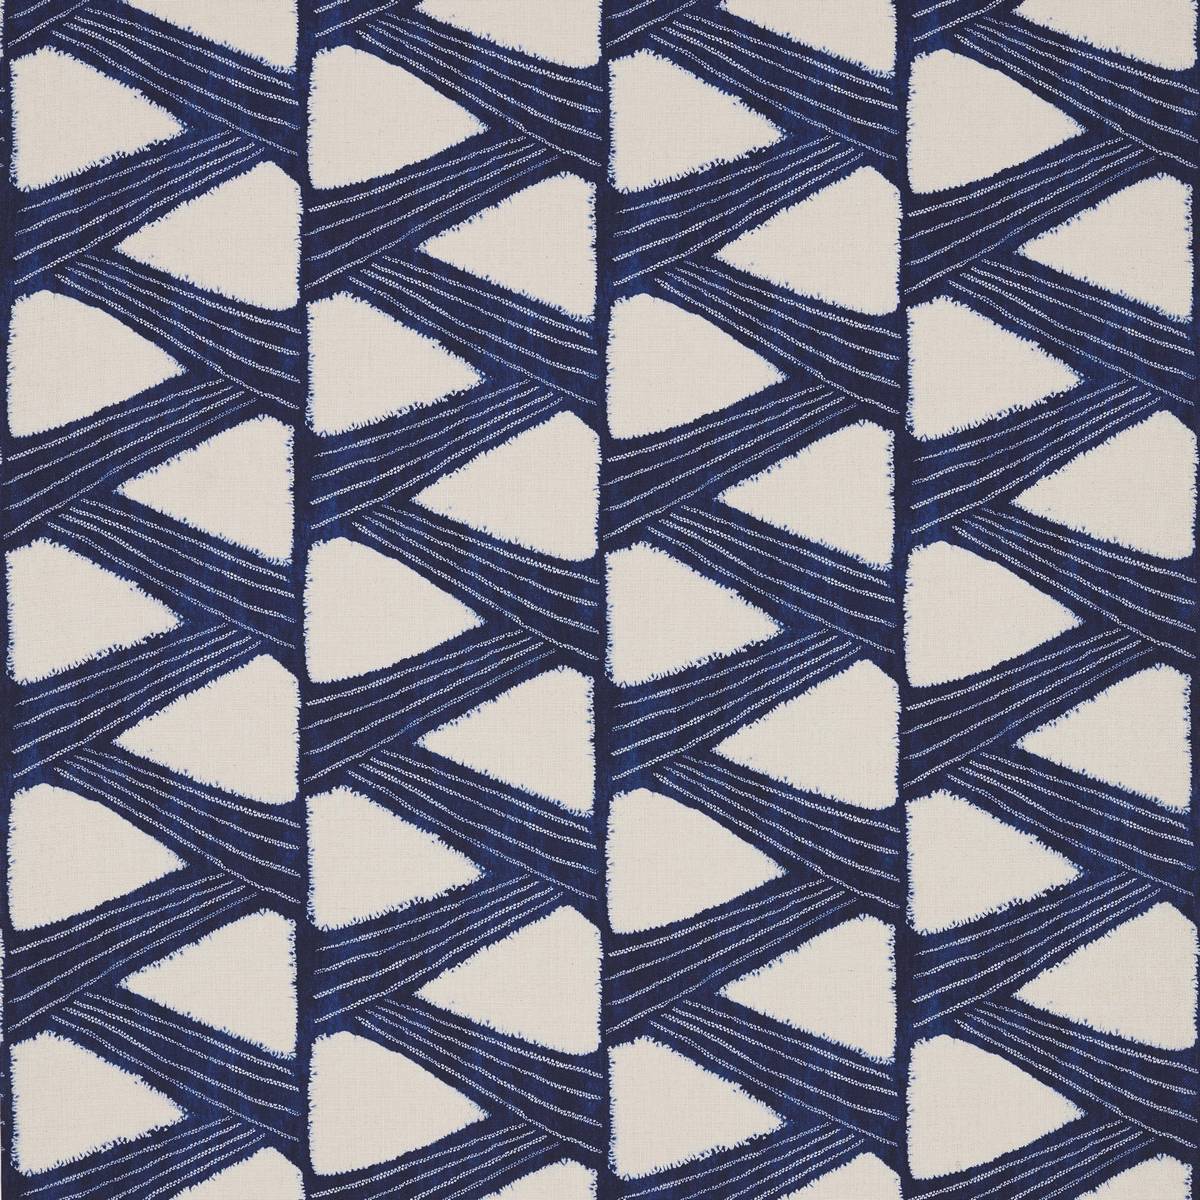 Kanoko Indigo Fabric by Zoffany